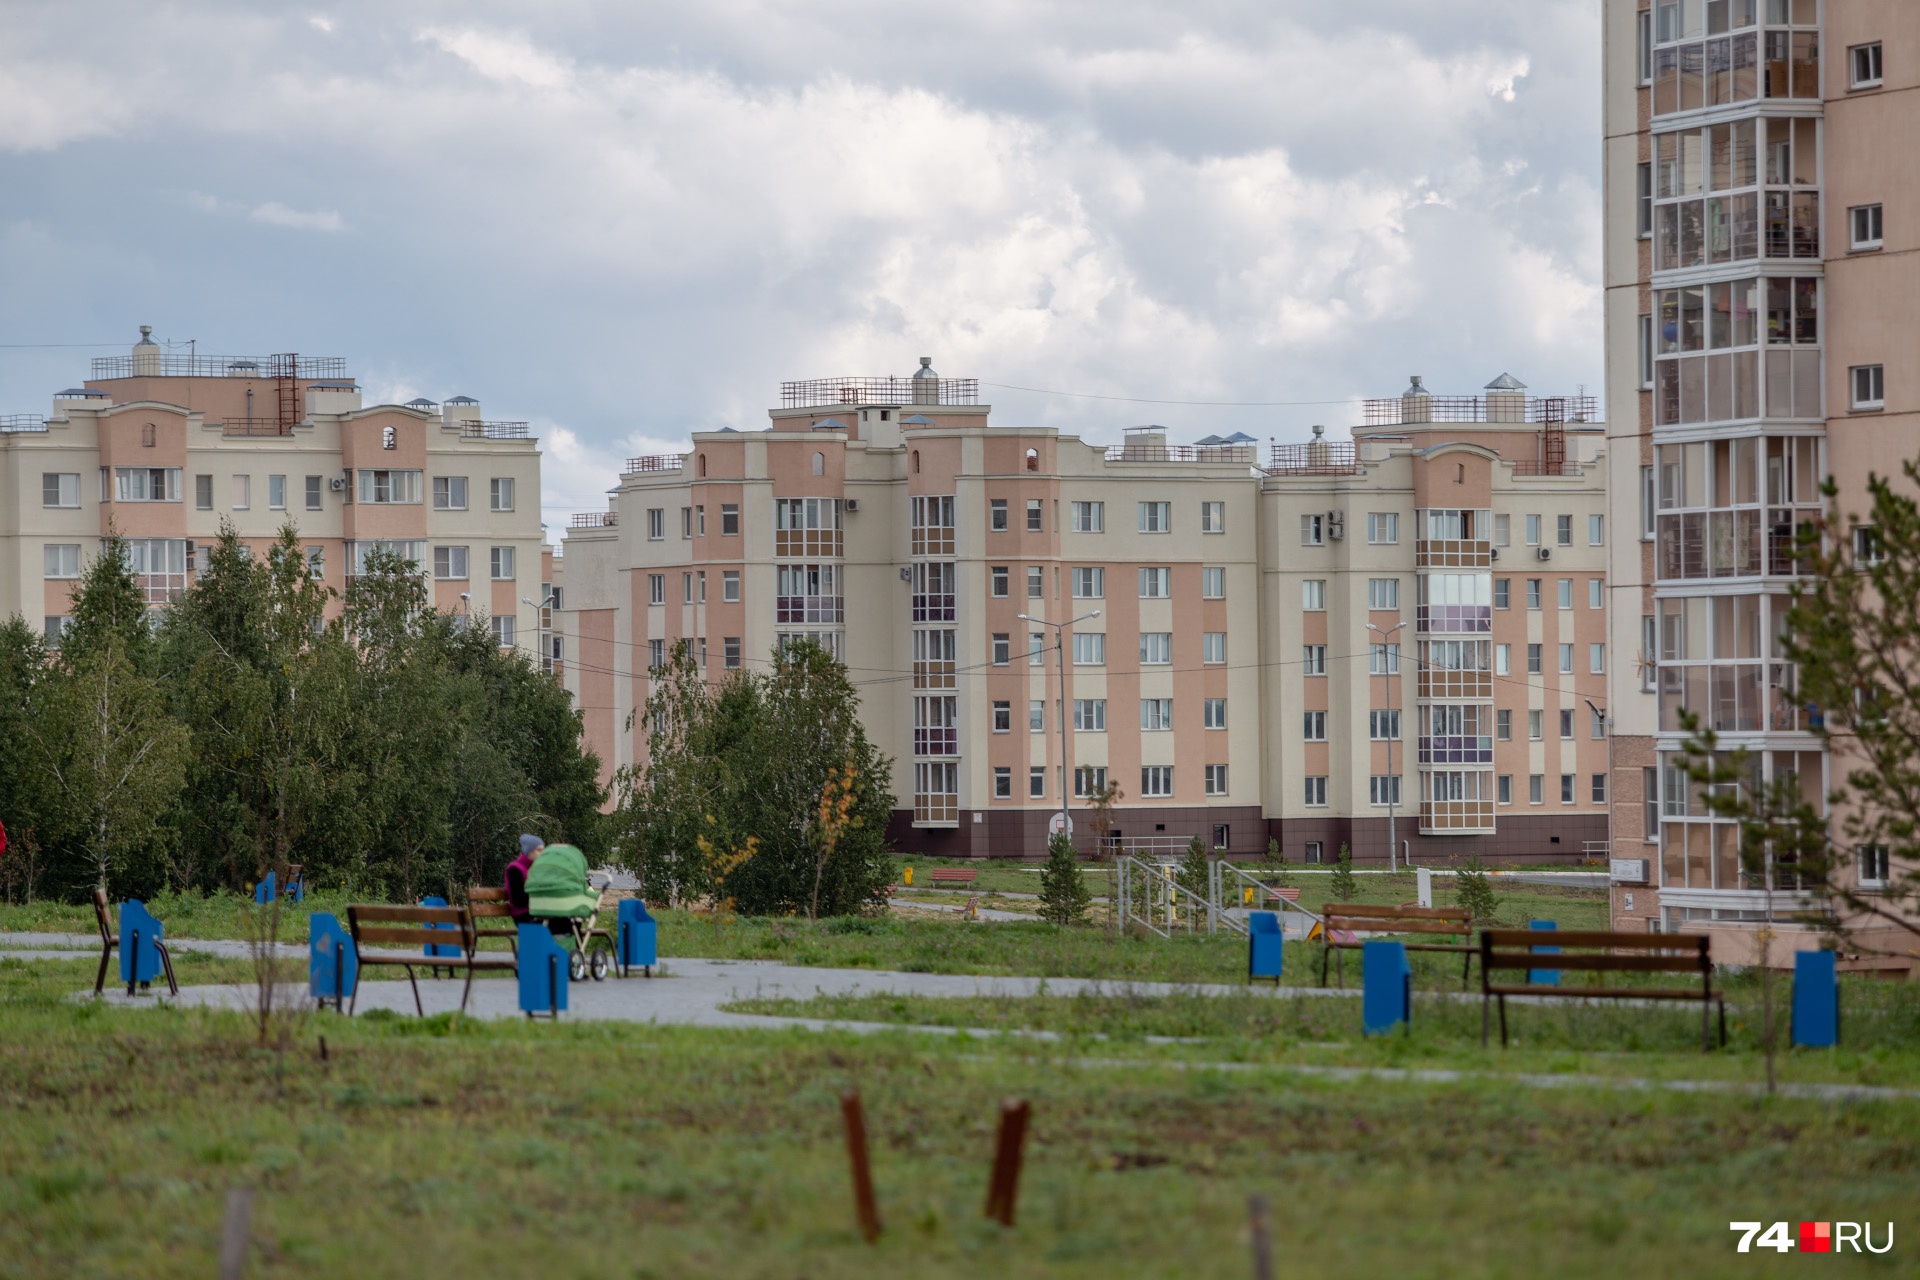 Карты Таро, дорога-призрак и конфликты из-за панелек: изучаем Новый Челябинск на Шершнях